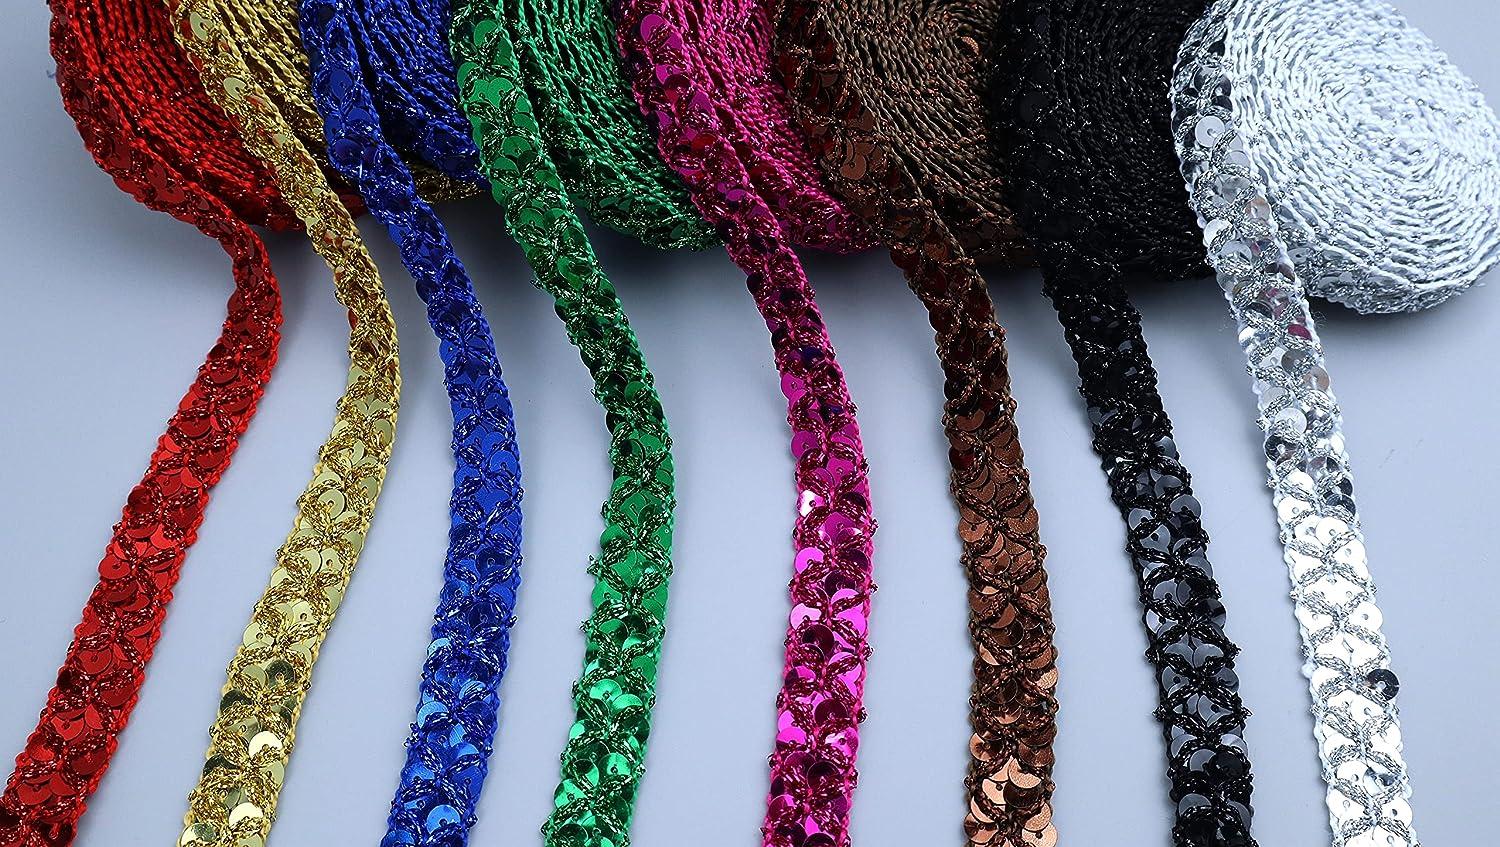 Multicolor Cotton Lace Ribbon Crochet Lace Trimming - China Crochet Lace  and Crochet Lace Trim price